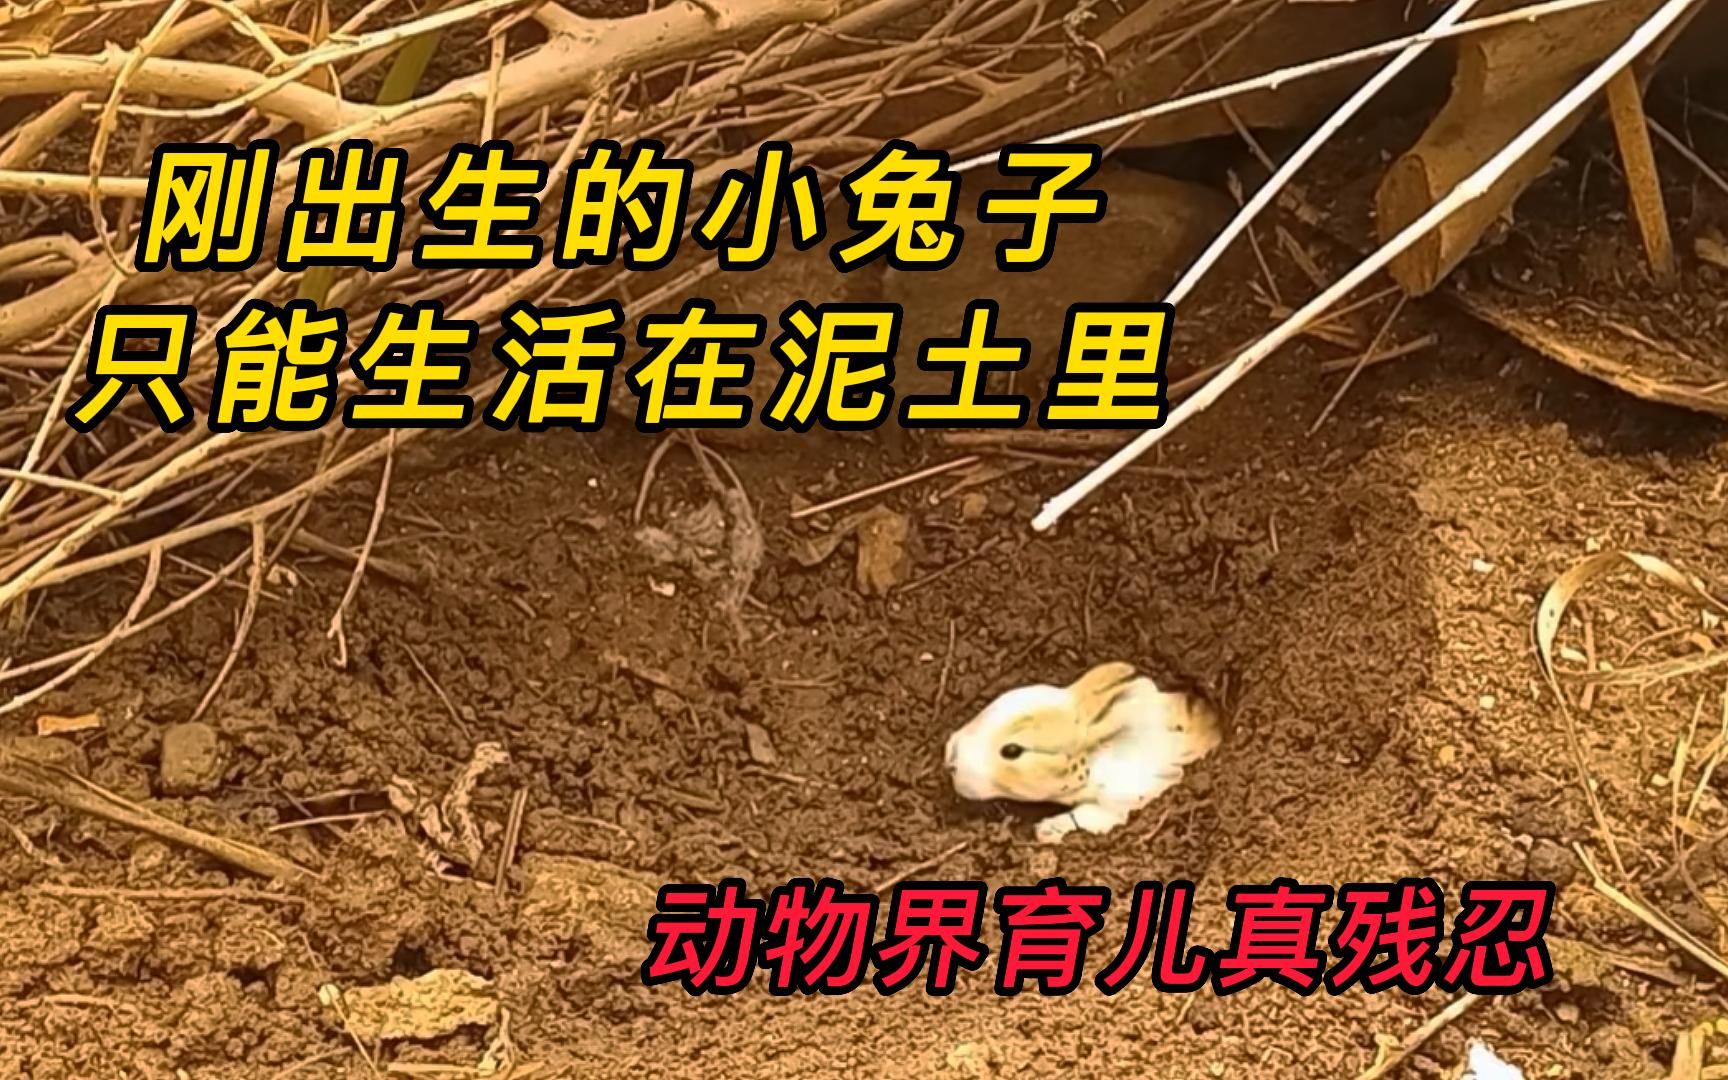 刚出生的小兔子，只能生活在土里，这背后究竟是何原因？